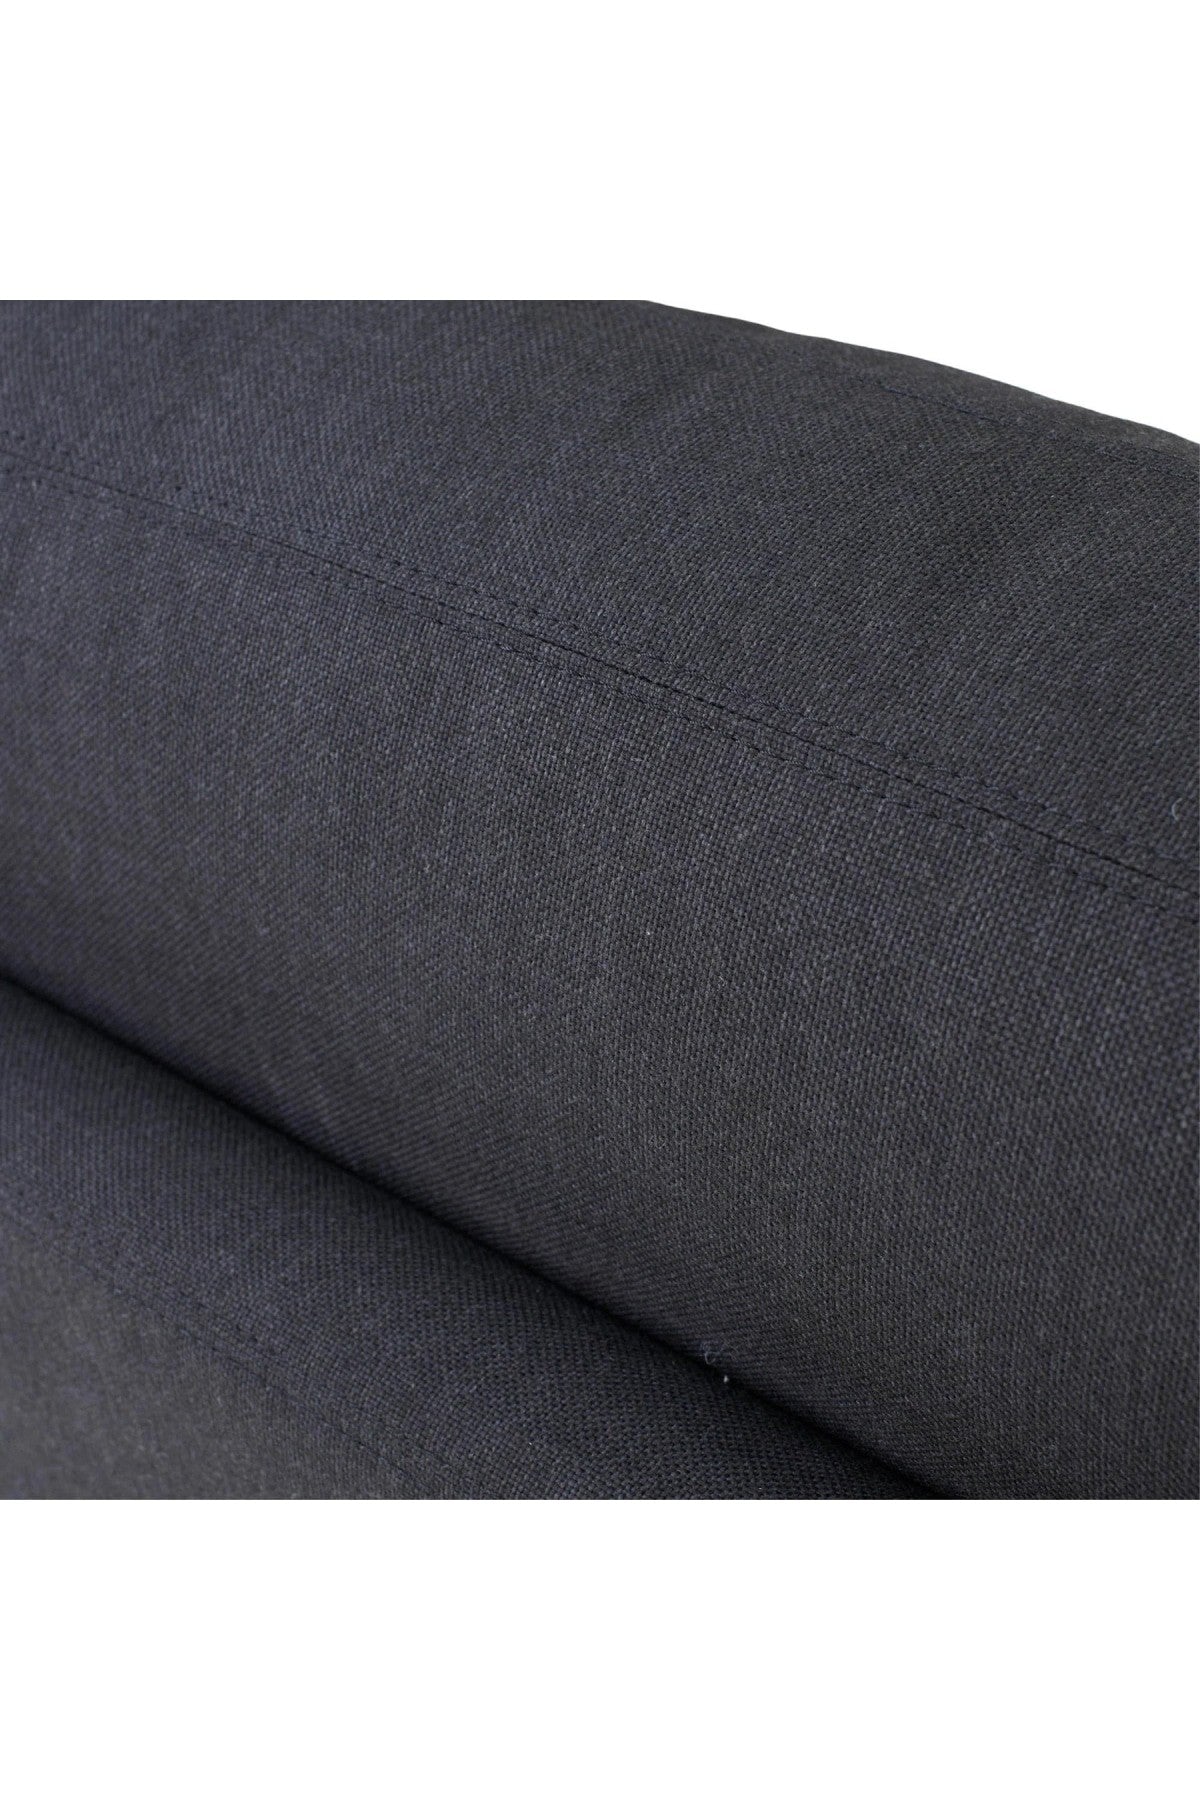 Heston Slipcover Sofa